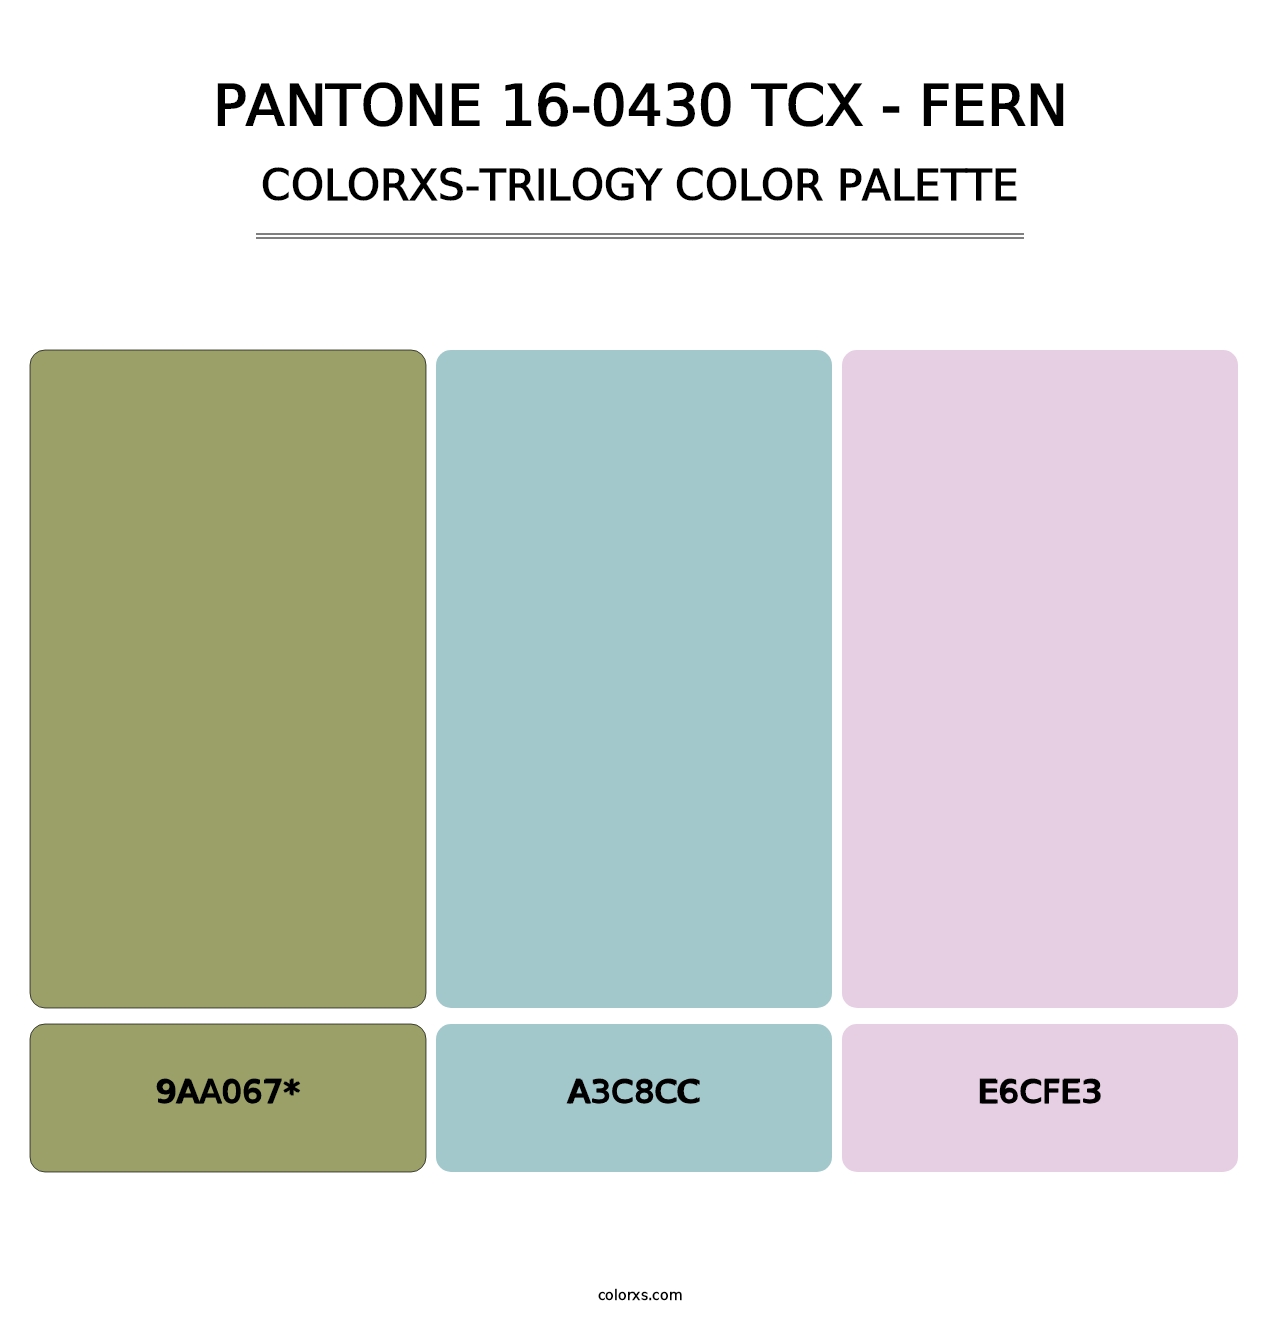 PANTONE 16-0430 TCX - Fern - Colorxs Trilogy Palette